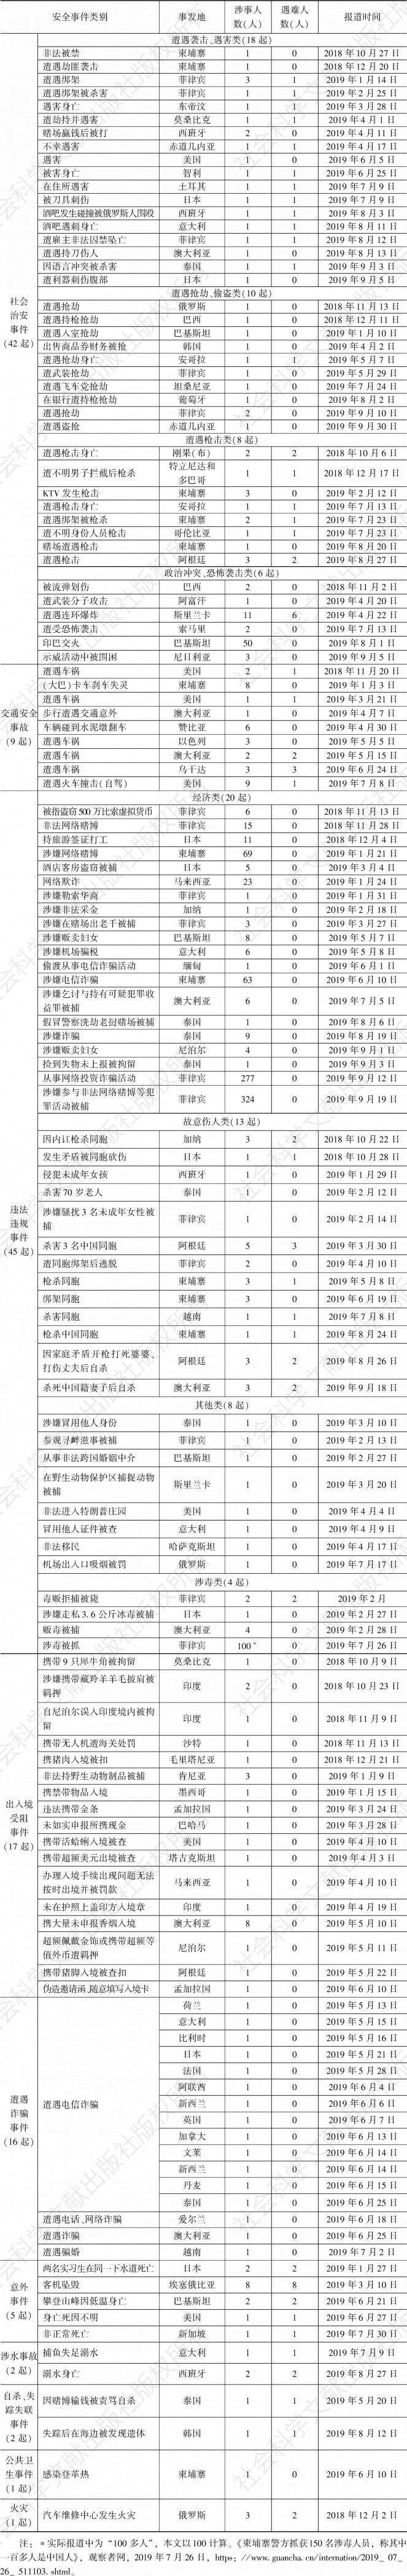 表6 其他中国公民海外安全事件统计